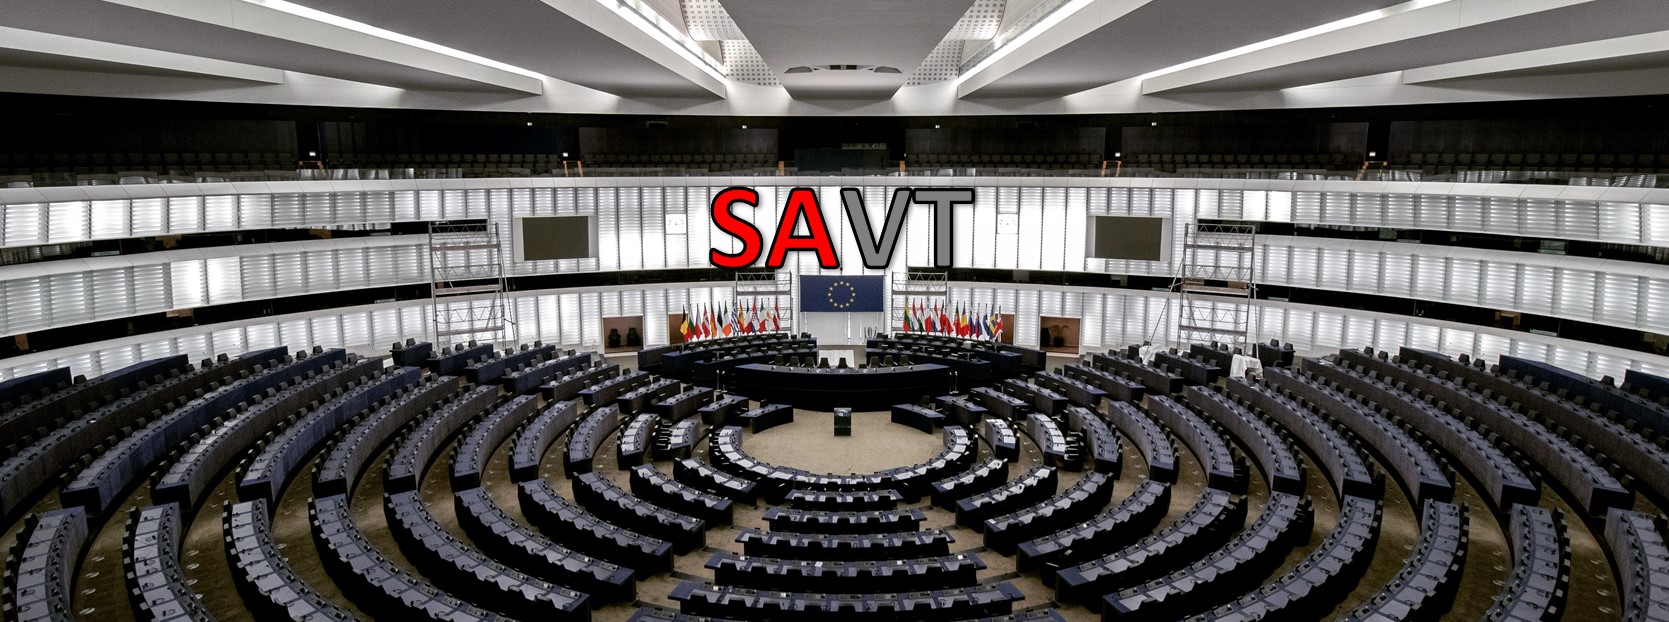 SAVT Generalversammlung